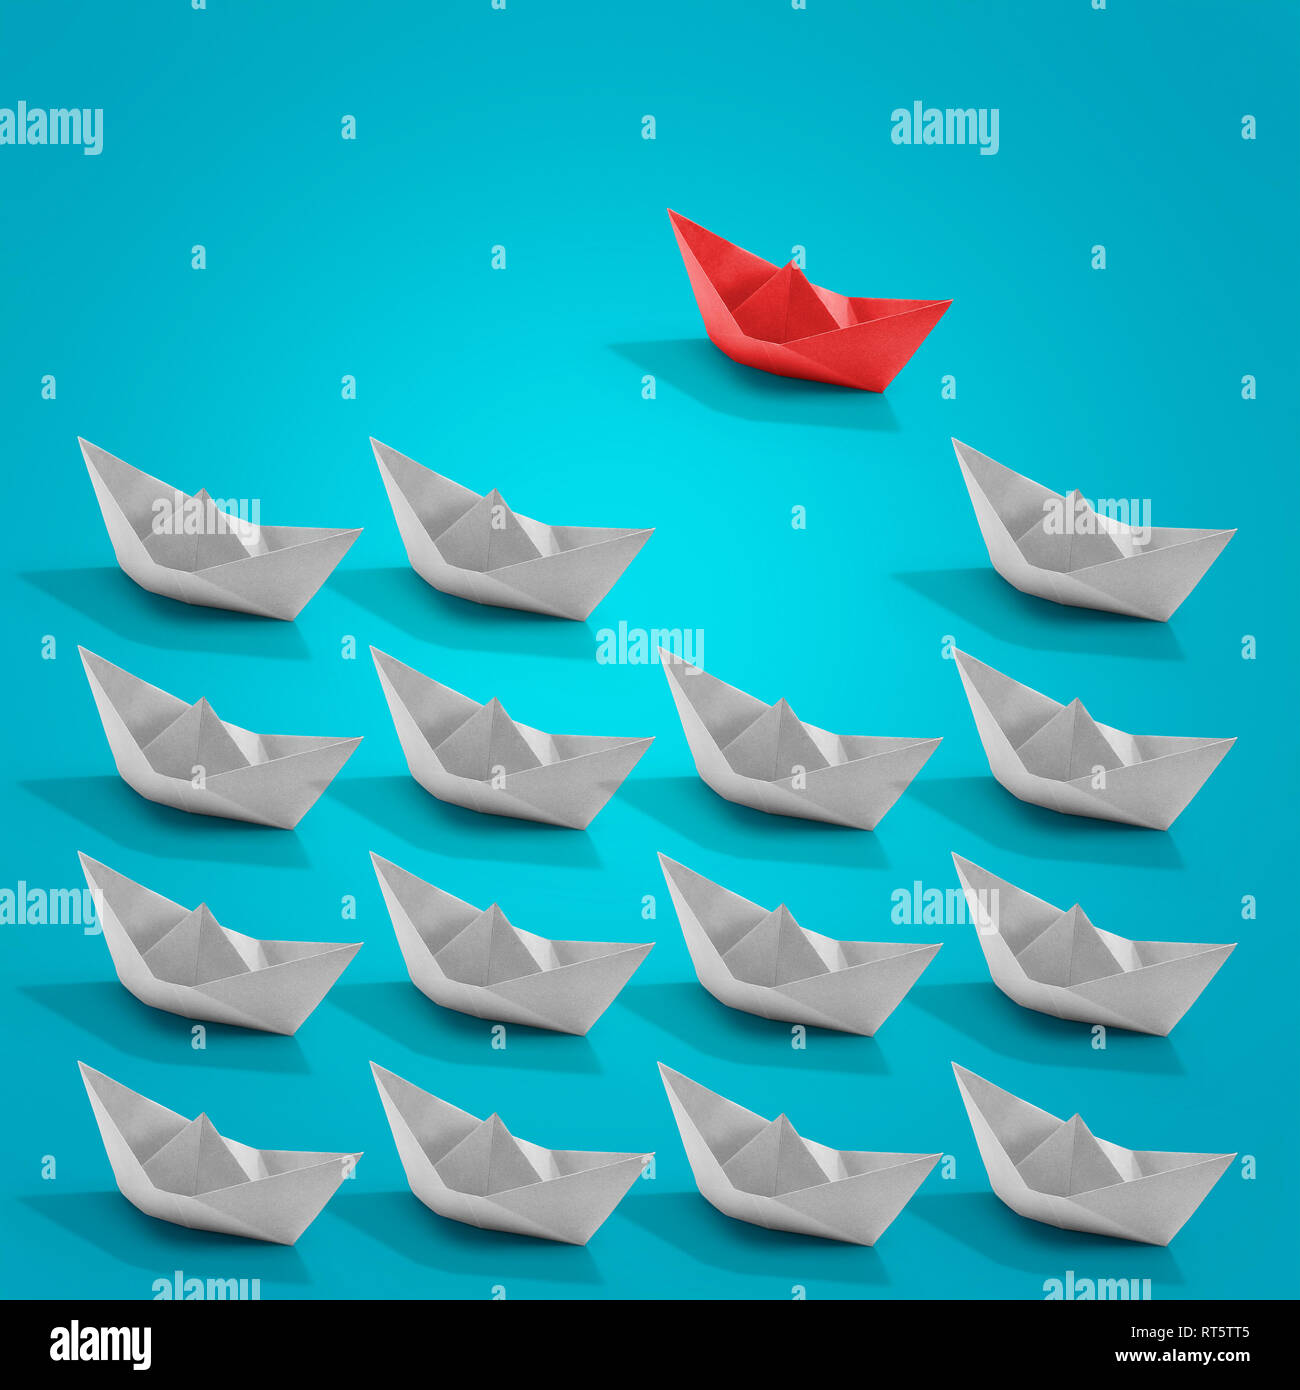 Flotting Papier boot Origami mit einem roten auf die türkise Farbe Hintergrund. Business und Lösungskonzept Stockfoto